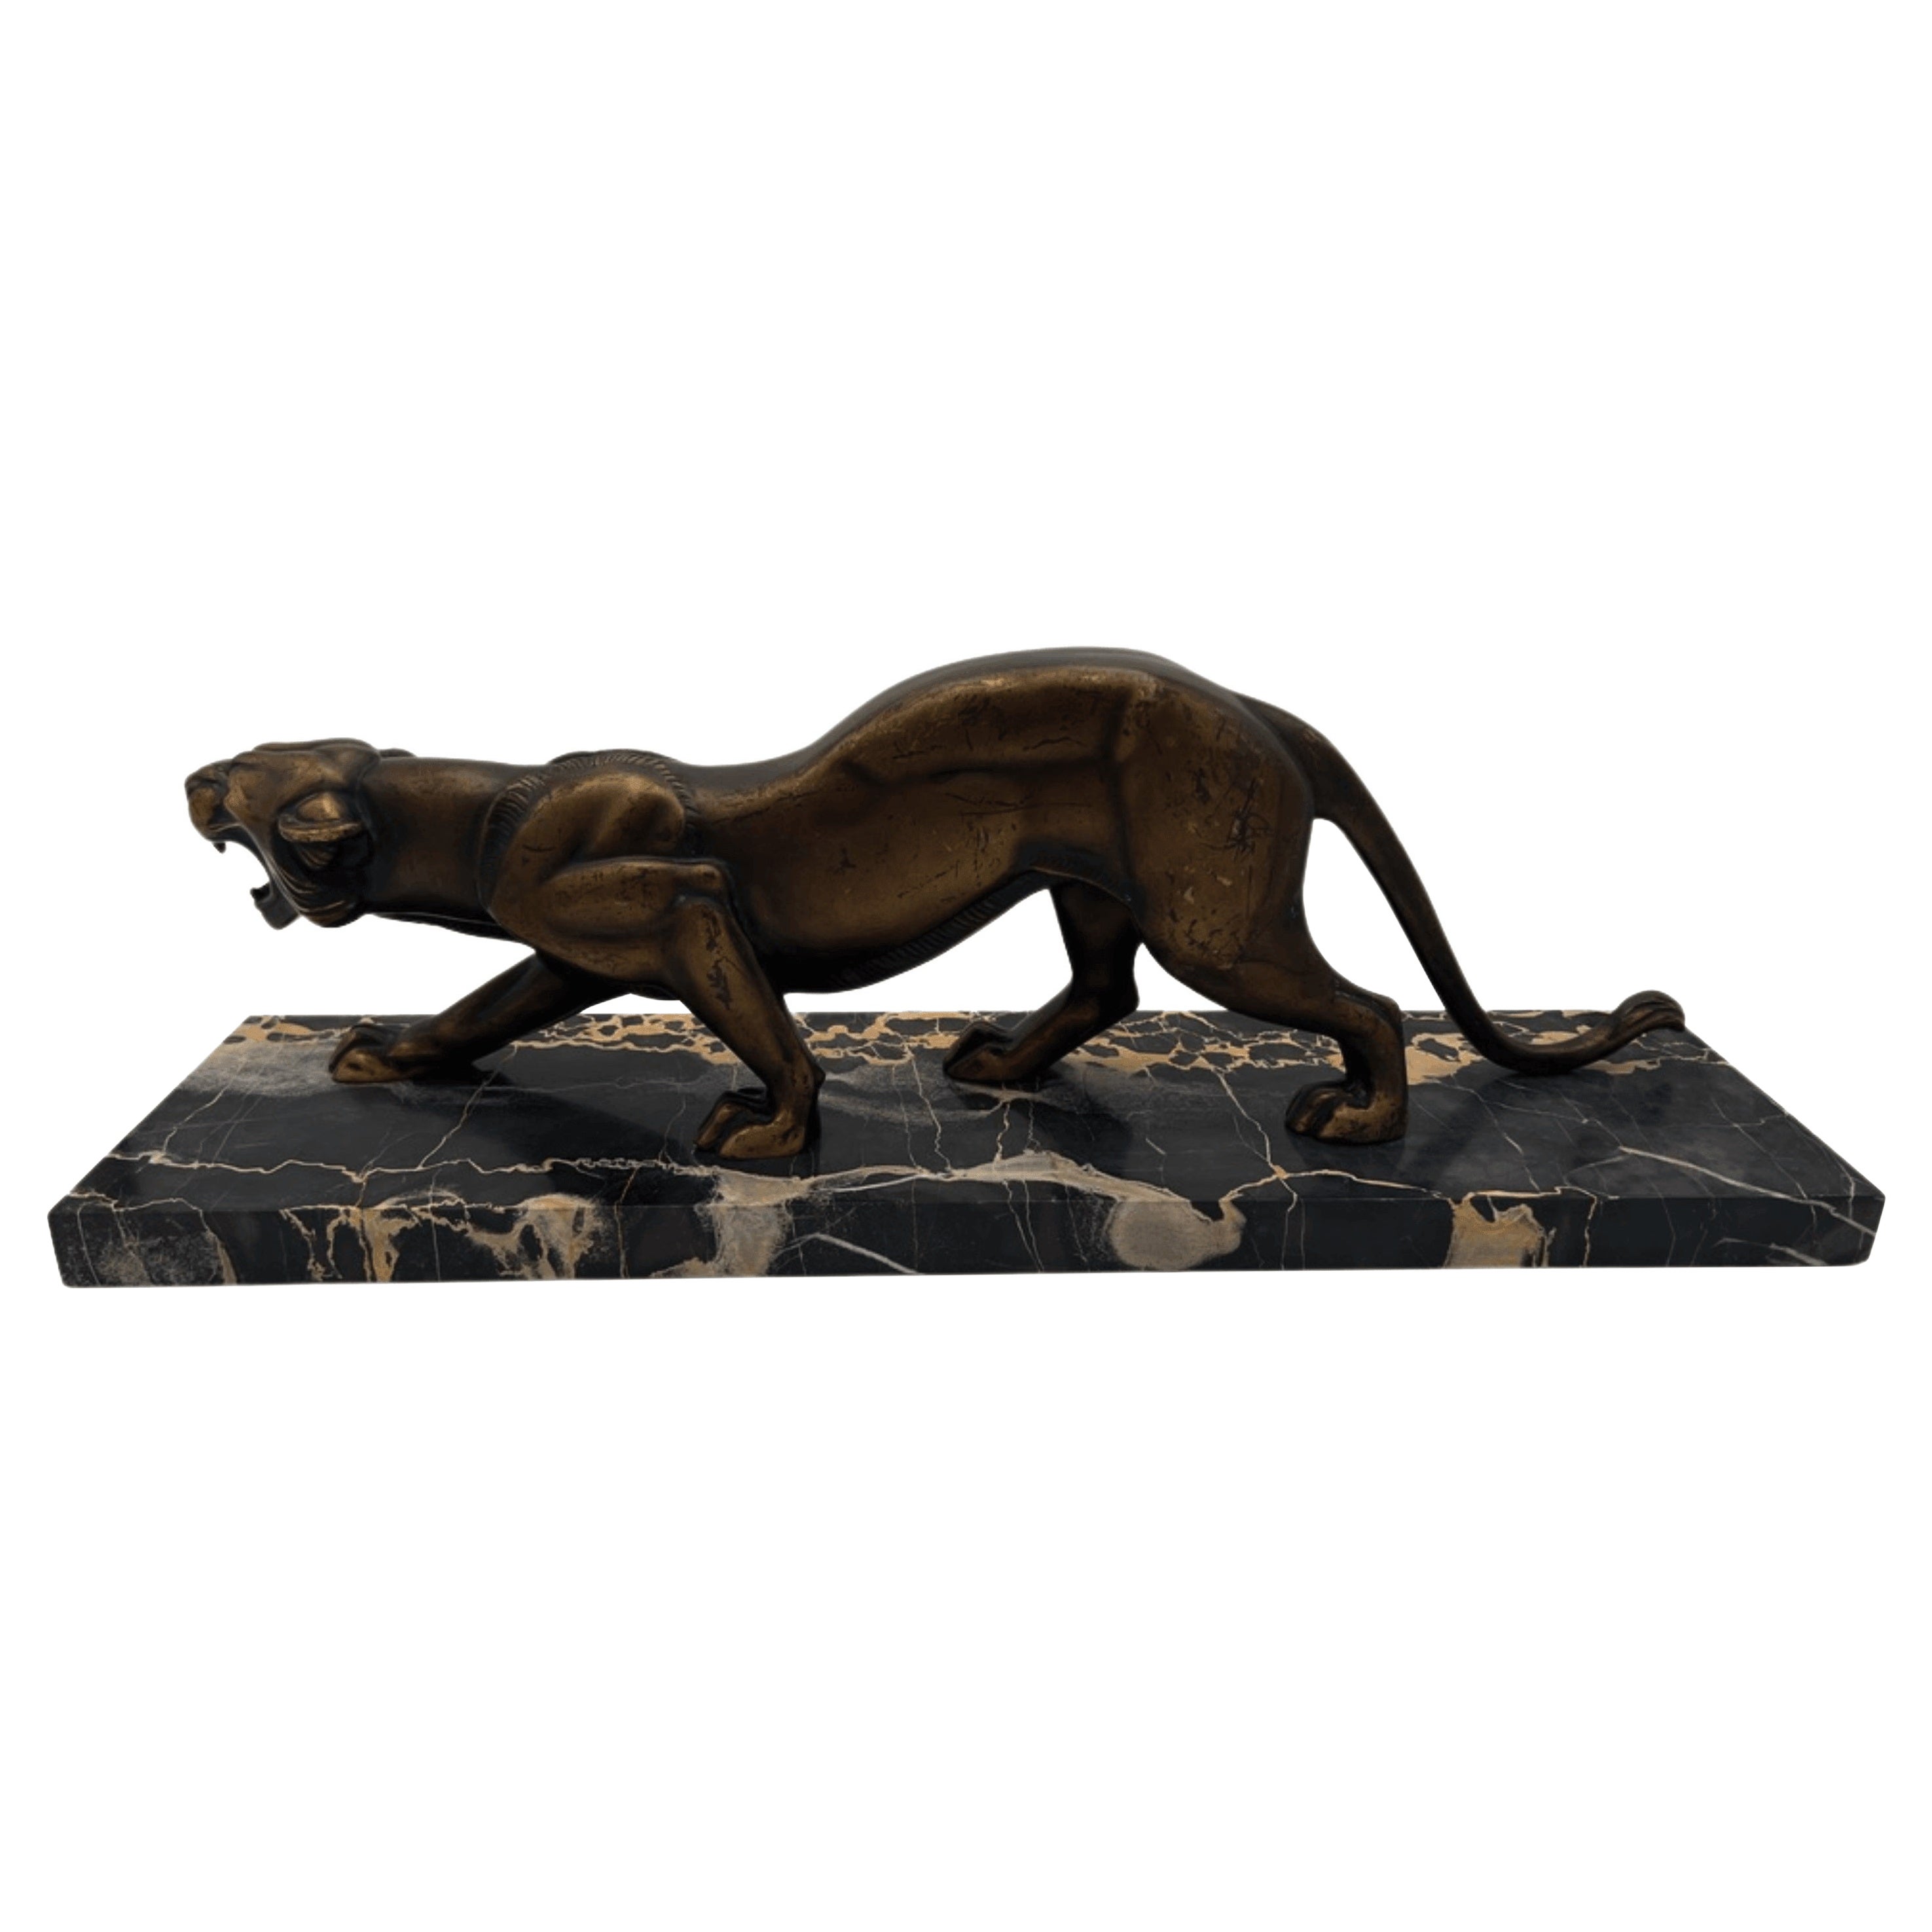 Art DecosSkulptur eines Panthers, Bronzeguss, Marmor, Frankreich um 1930

Elegante Art-Déco-Skulptur eines Panthers

- Modell von Irenee Rochard, unsigniert
- Massiver Bronzeguss, patiniert, gestempelt
- Sockel aus Portormarmor, später